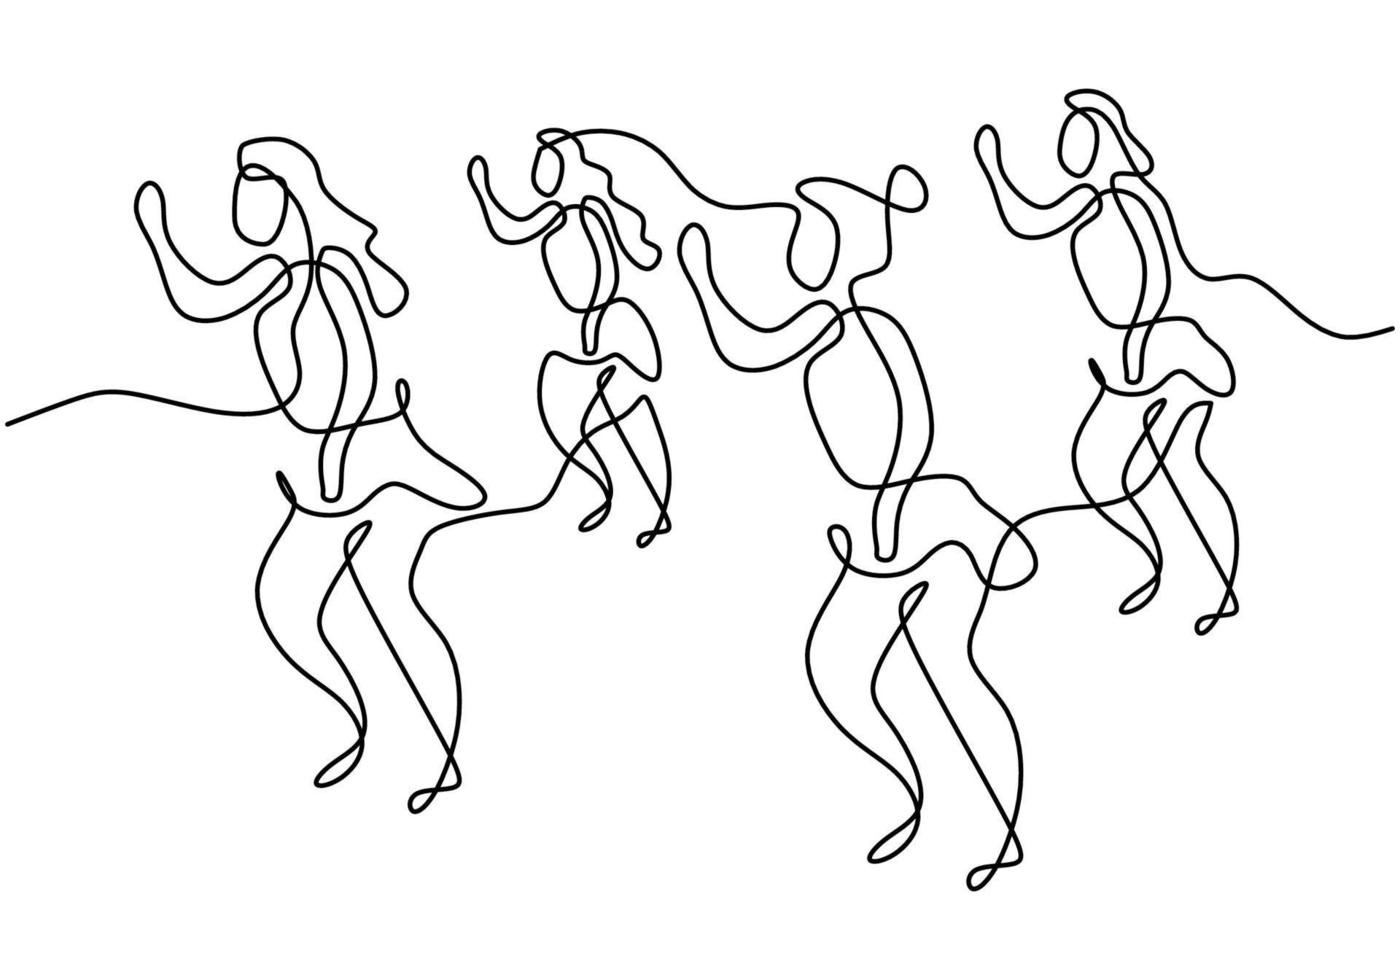 kontinuerlig linje ritning av grupp flickor i zumbadans. fyra energiska unga kvinnors öva dans isolerad på vit bakgrund. dans sport och hälsosam livsstil koncept. vektor illustration